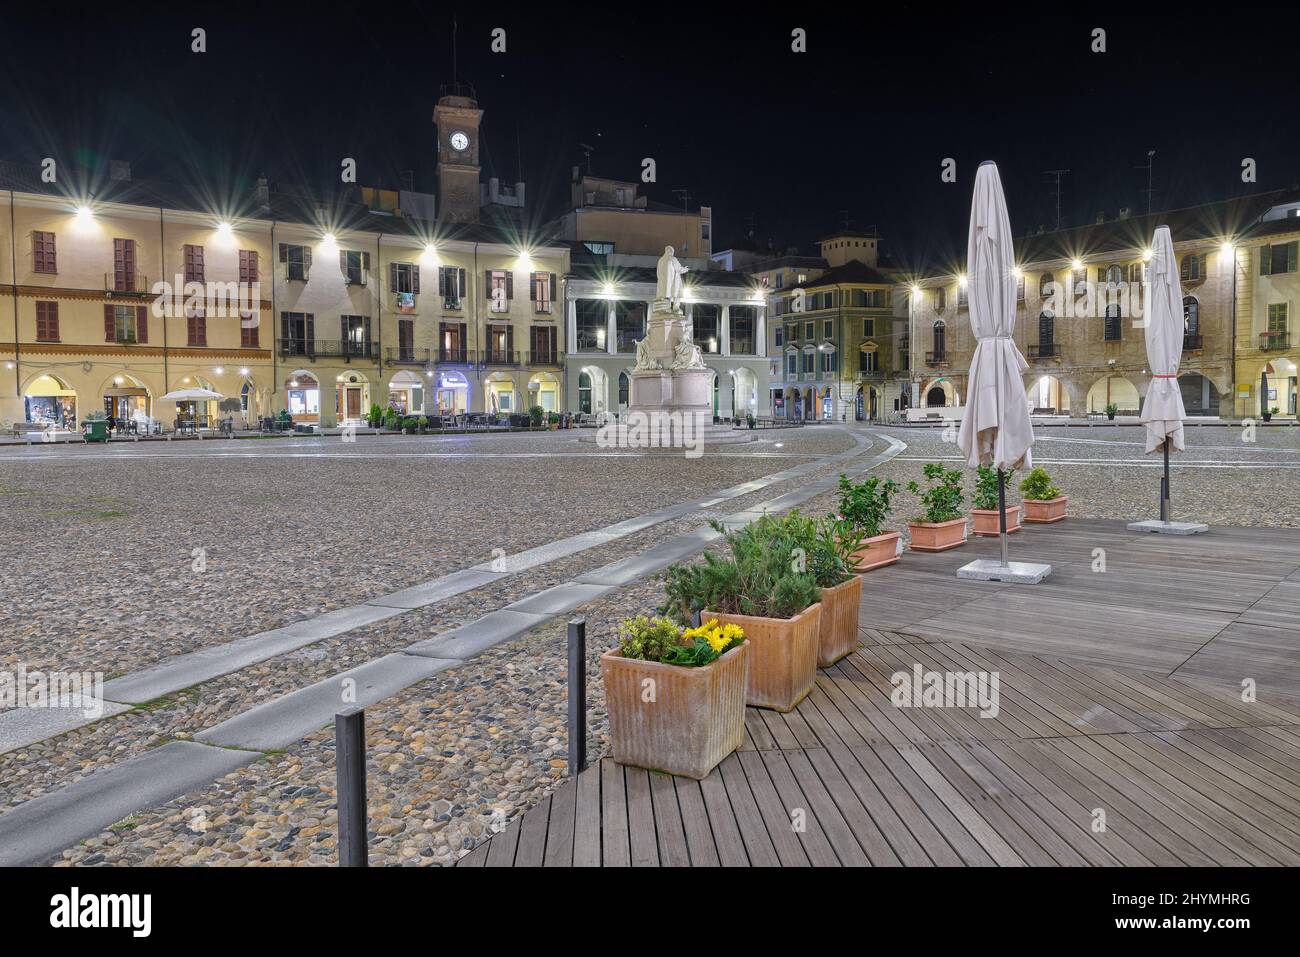 Plaza desierta por la noche, Plaza italiana tradicional en la ciudad de Vercelli Foto de stock